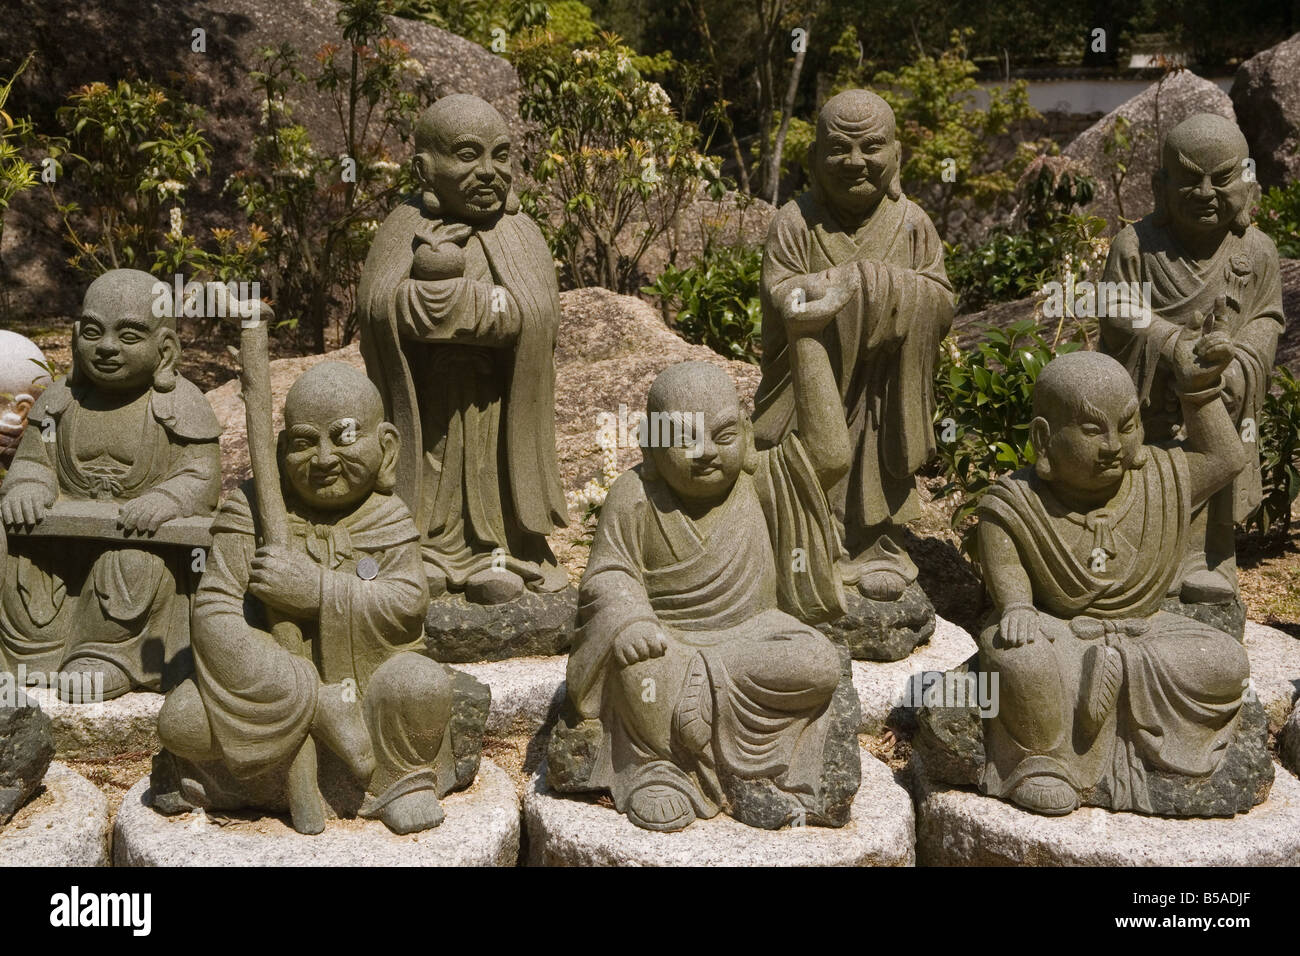 Auswahl von einer Armee von 500 ähnliche kleine Buddhas am Daishoin Tempel Miyajima-Japan-Asien Stockfoto